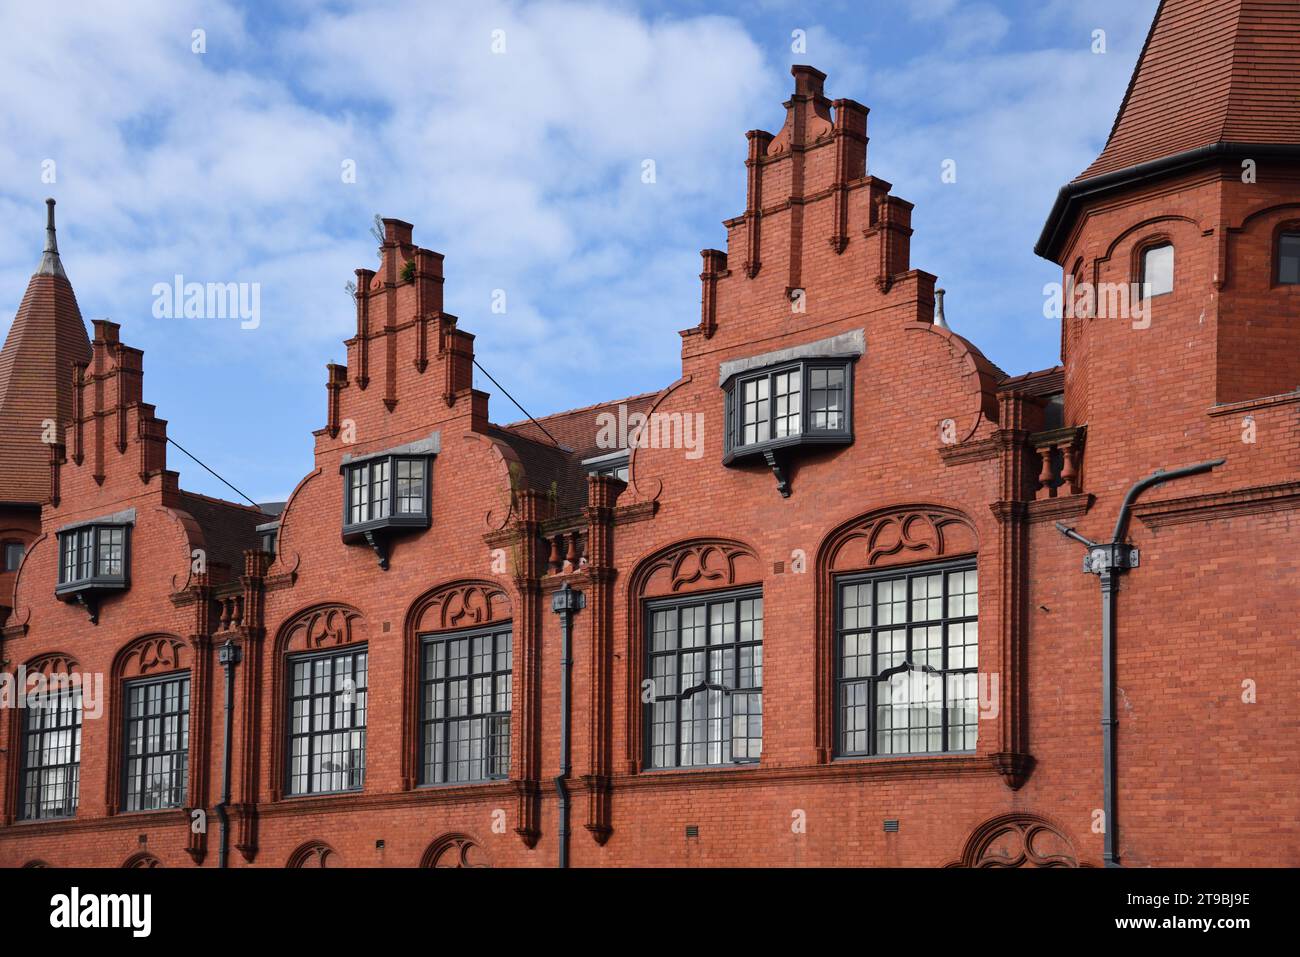 Décoration flamande style gothique rouge briques Gables sur Victorian Chancery House (1899) Grade II Bâtiment classé, Paradise Street, Liverpool Angleterre Royaume-Uni Banque D'Images